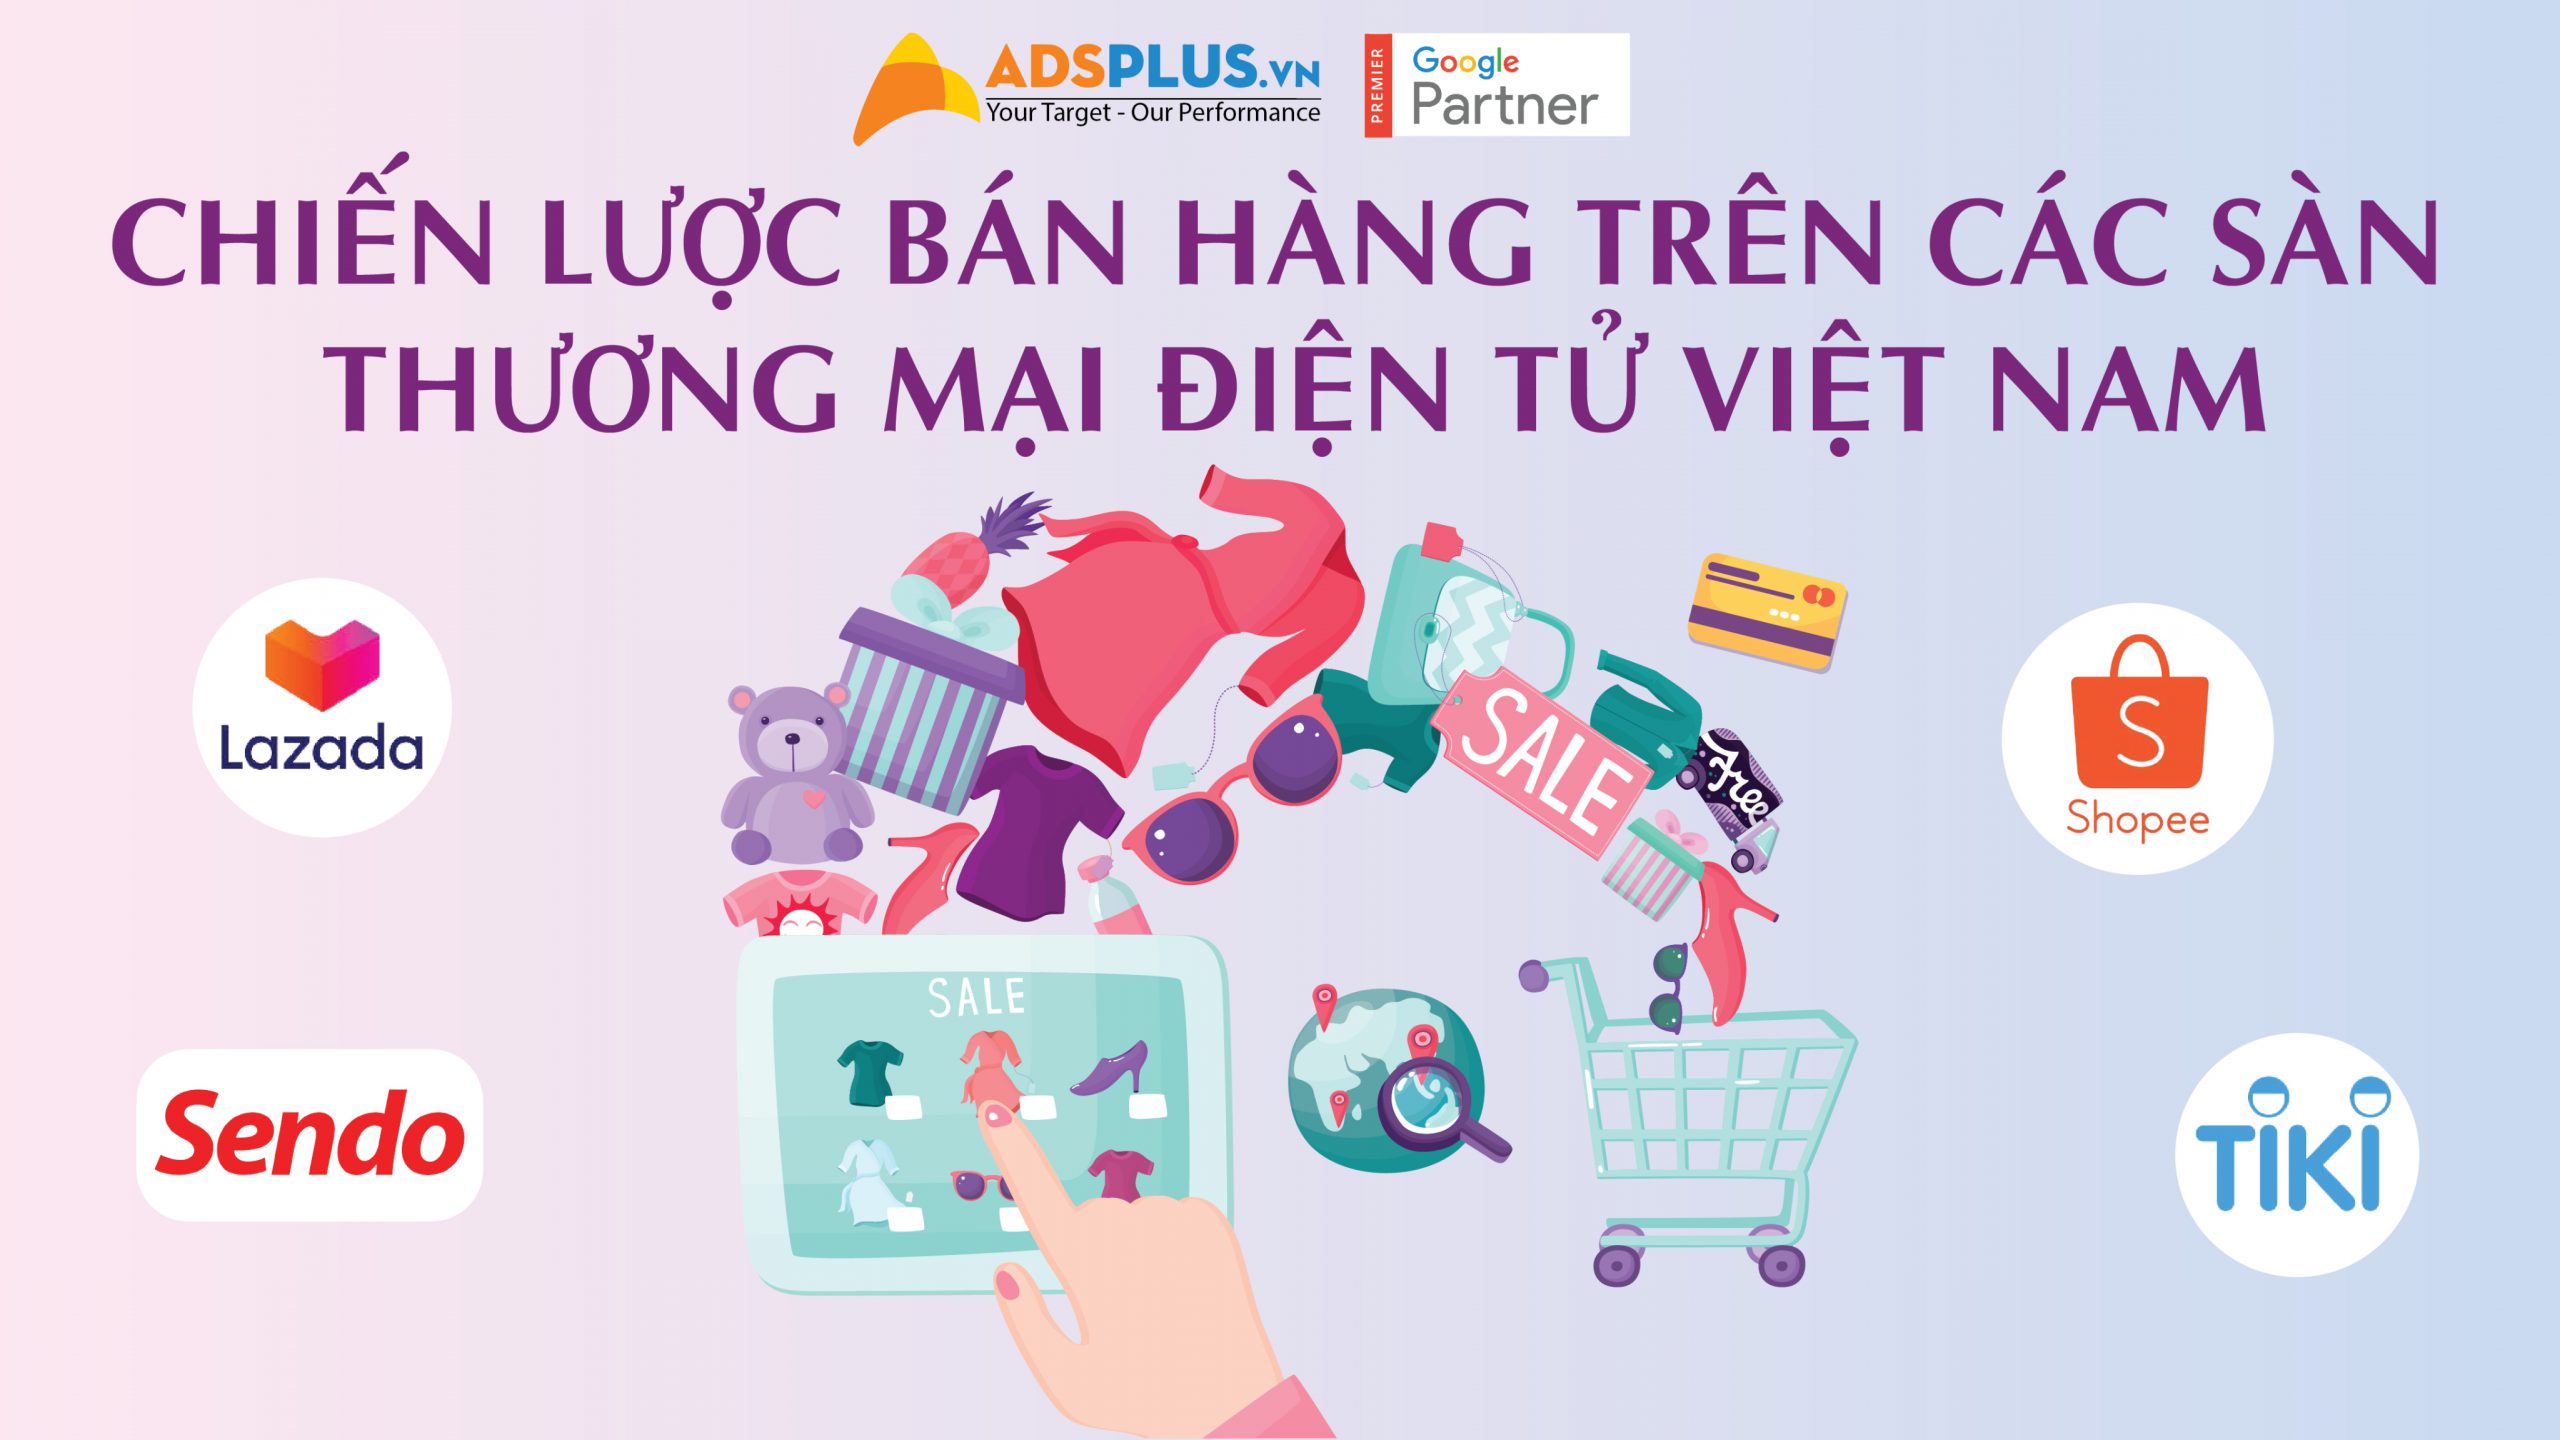 Chiến lược bán hàng trên các sàn thương mại điện tử Việt Nam